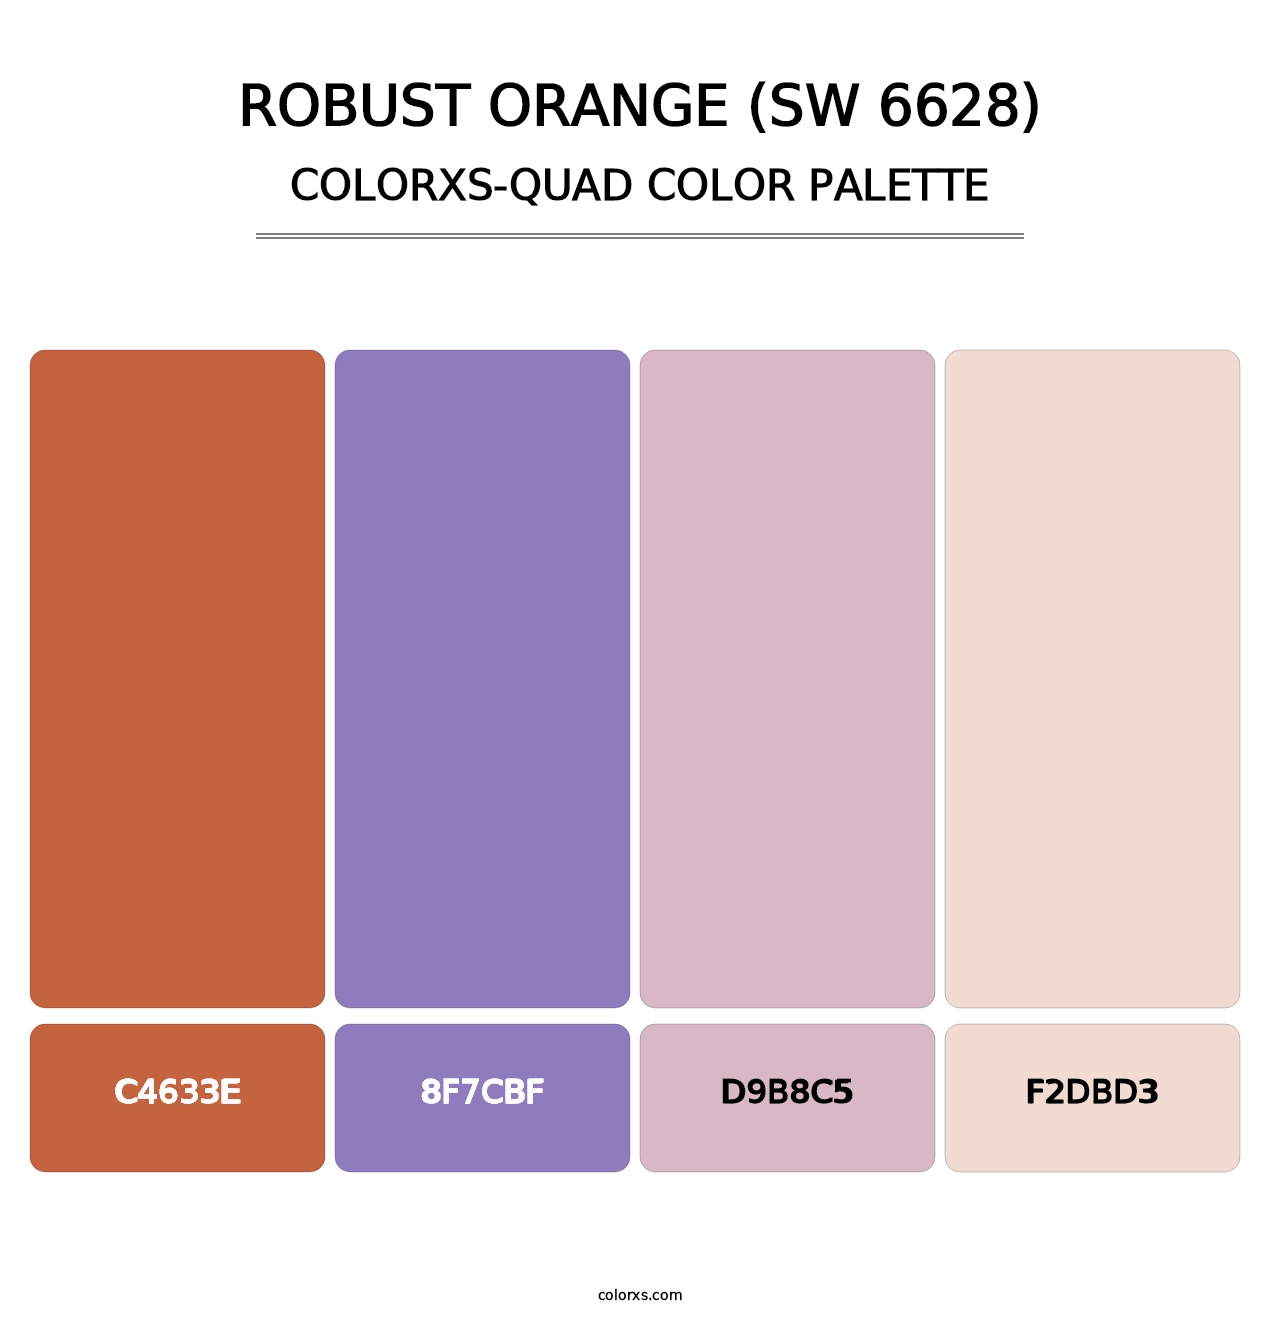 Robust Orange (SW 6628) - Colorxs Quad Palette